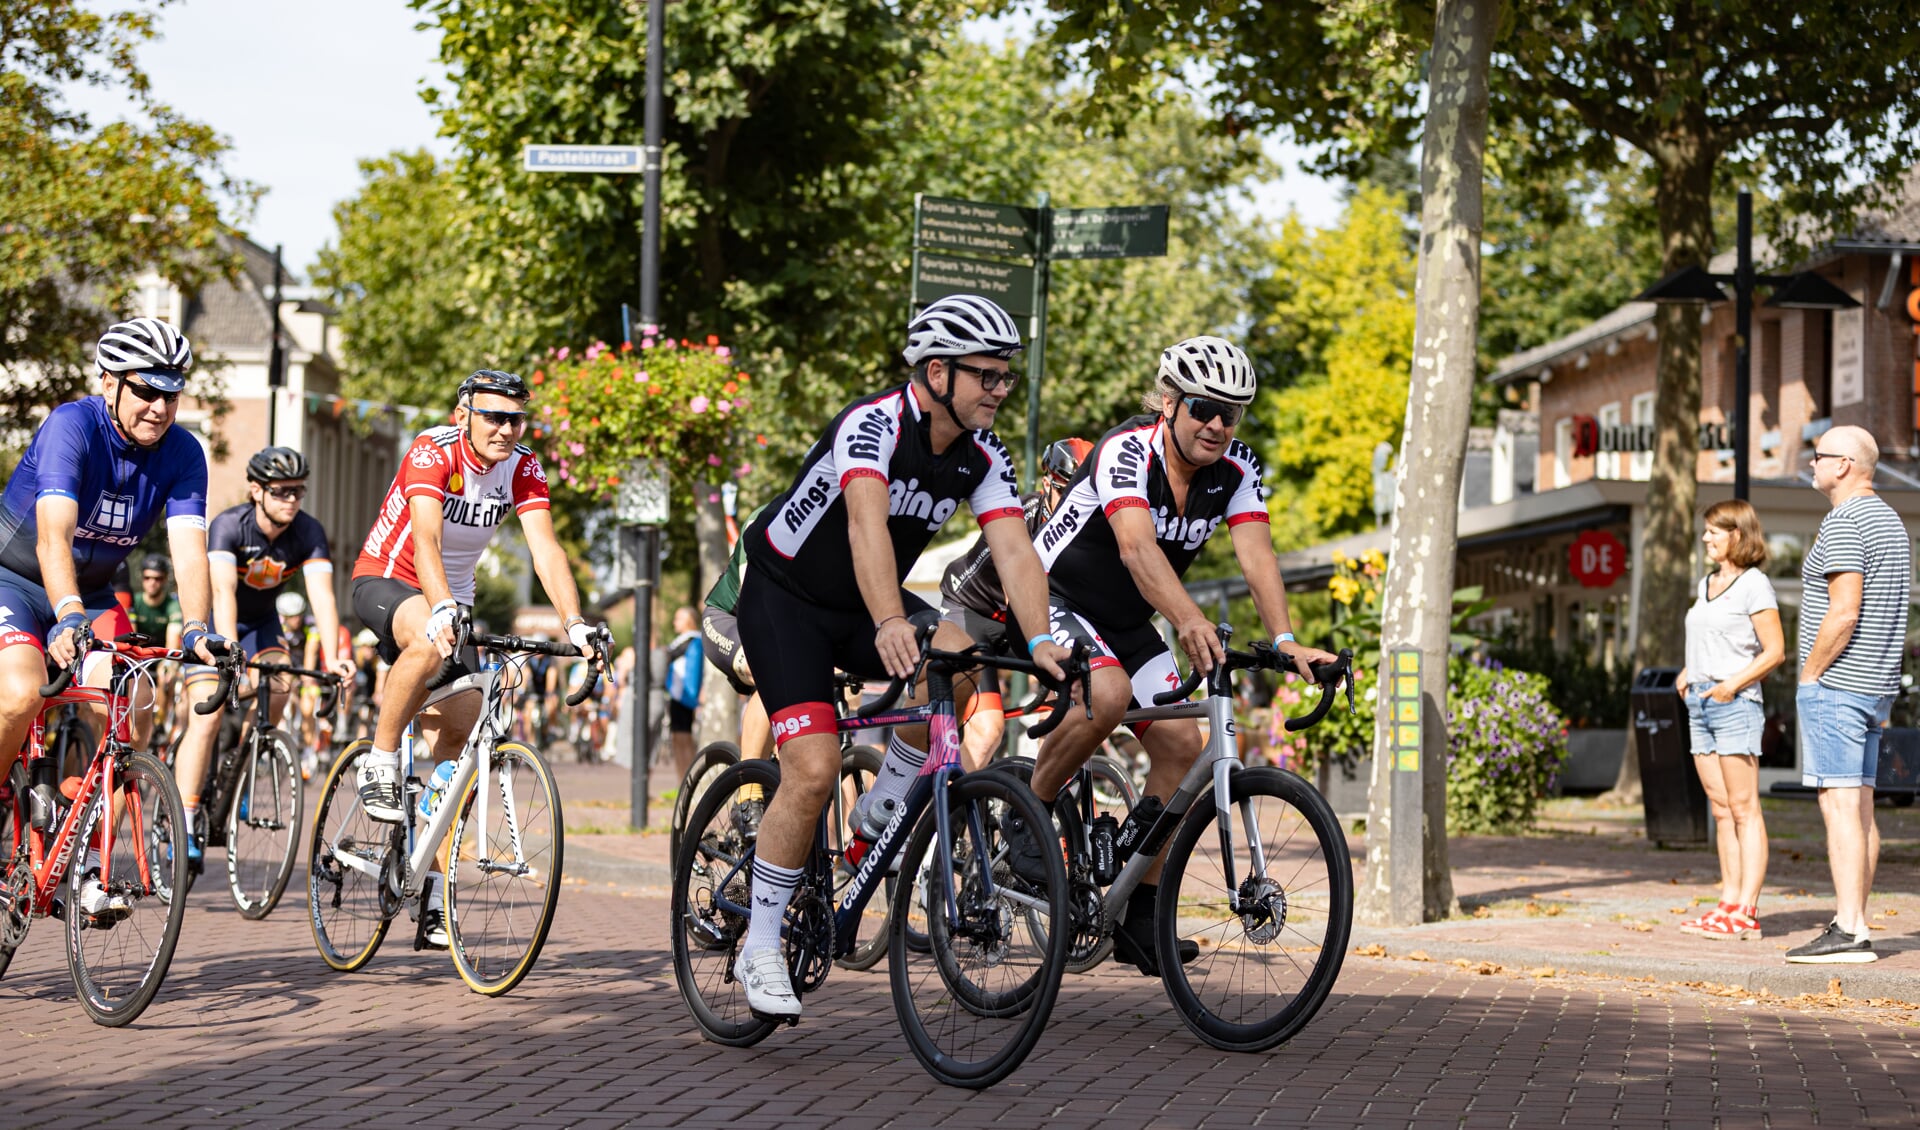 De Tour Der Ongeschoren Benen Classic trok ook door het centrum van Someren. (Foto: Patrick Janssen)